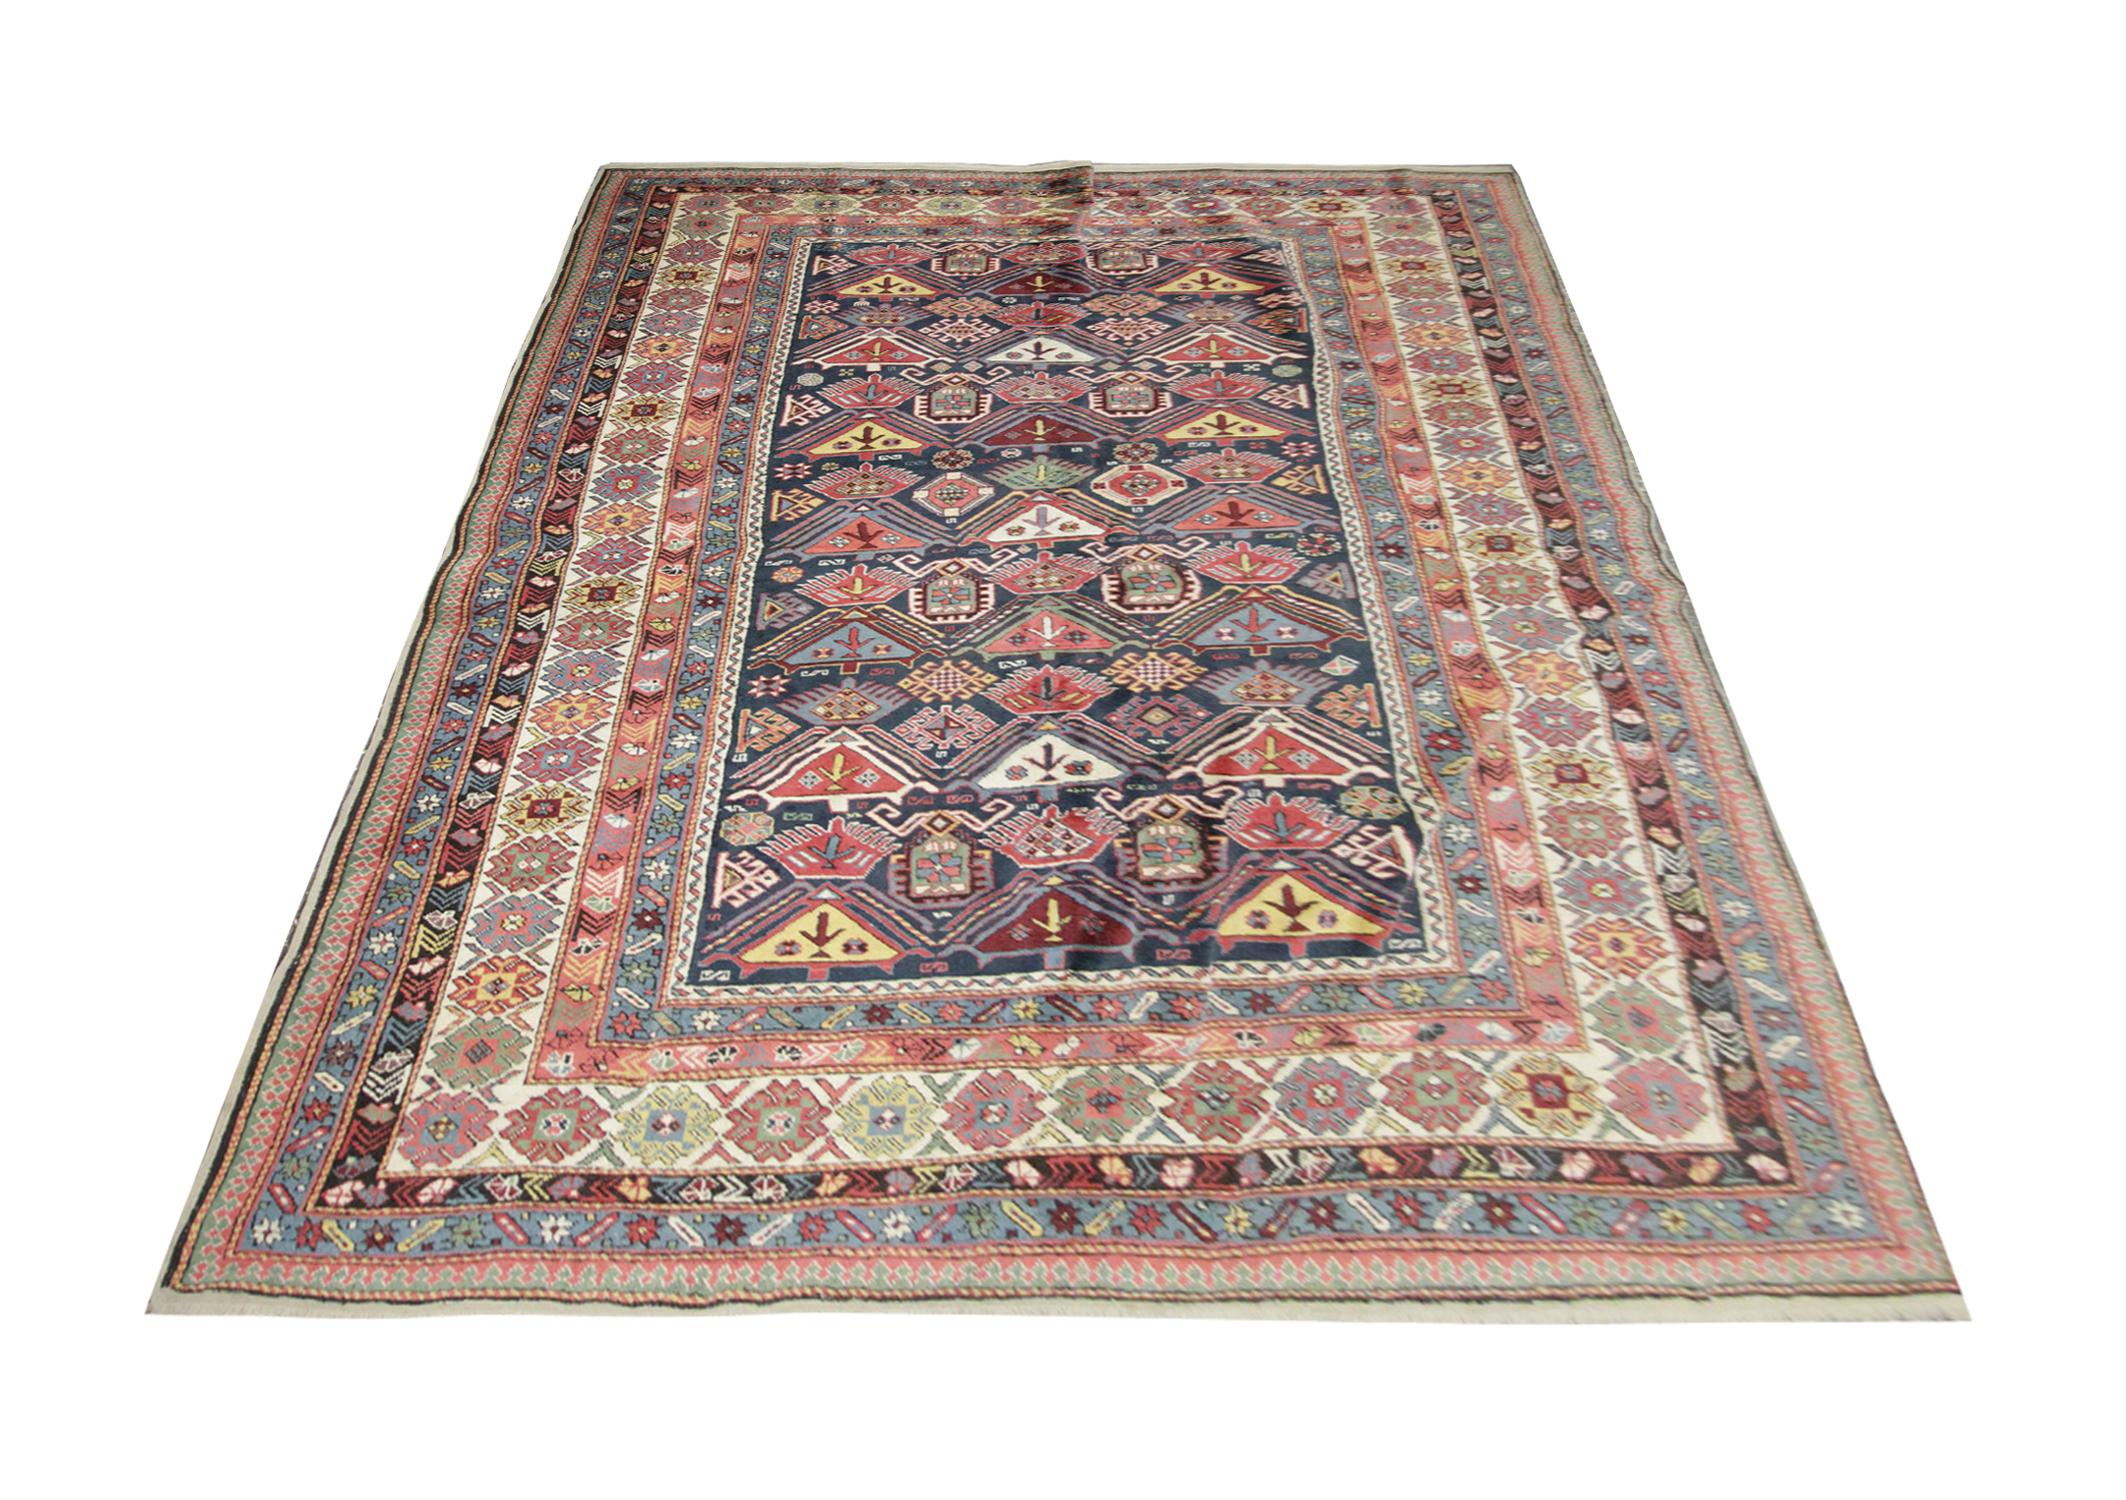 Ce tapis d'Orient provient de Shirvan, en Azerbaïdjan ; il a été tissé à la main avec de la laine filée à la main, qui a été teintée avec des colorants végétaux 100 % biologiques. Avec une bordure à plusieurs couches et un motif symétrique, ce tapis